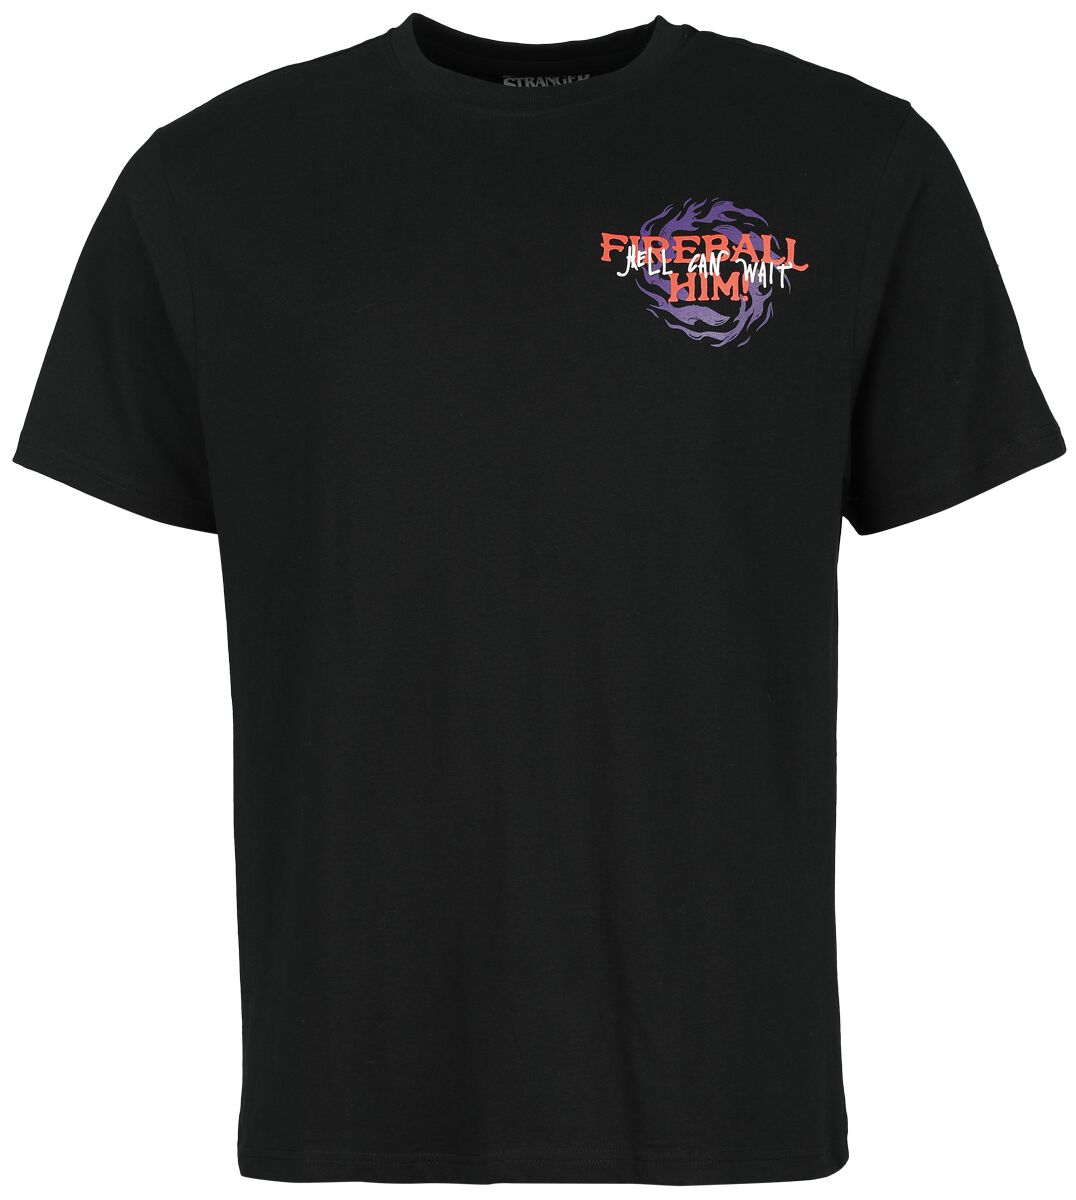 Stranger Things T-Shirt - Fireball Him - S bis L - für Männer - Größe L - schwarz  - Lizenzierter Fanartikel